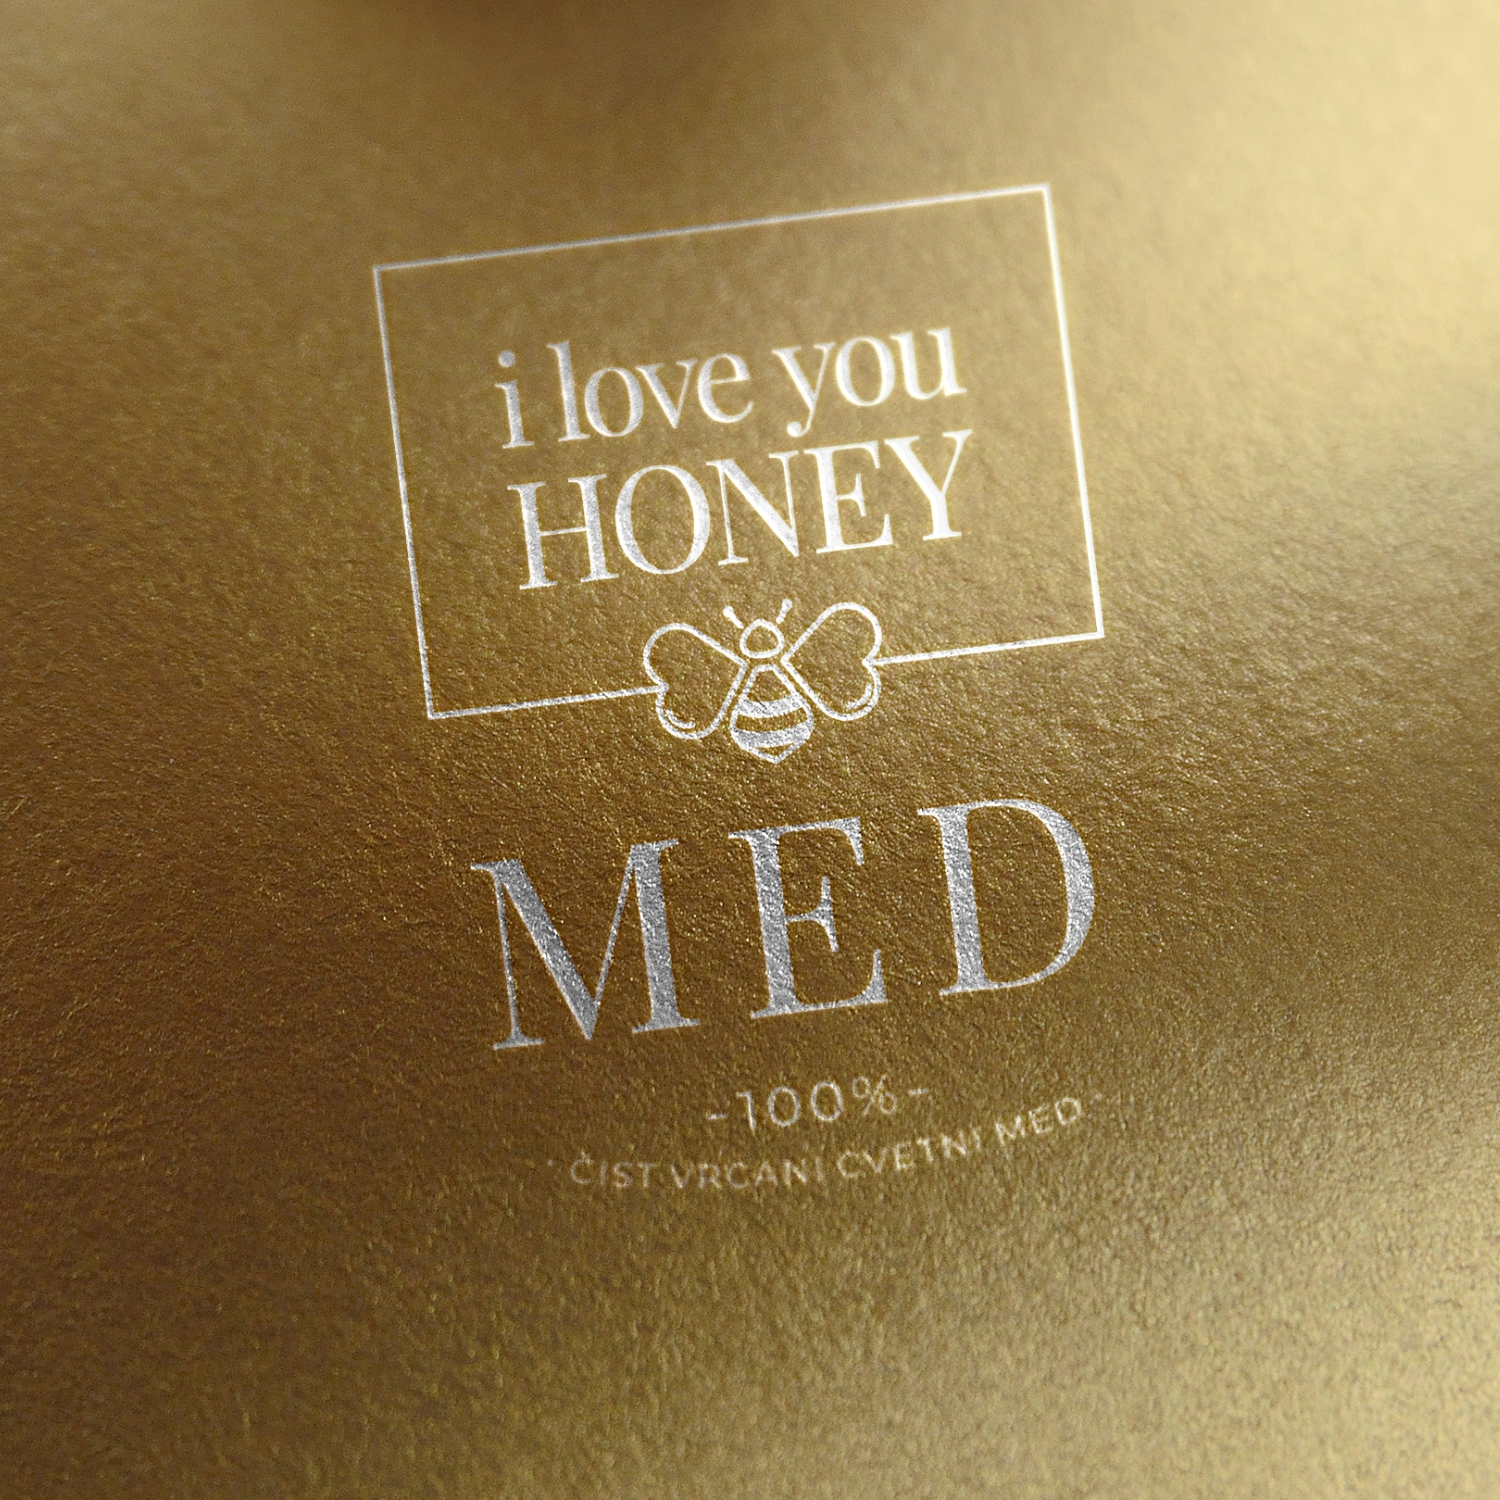 “I Love You Honey” concept for honey brand